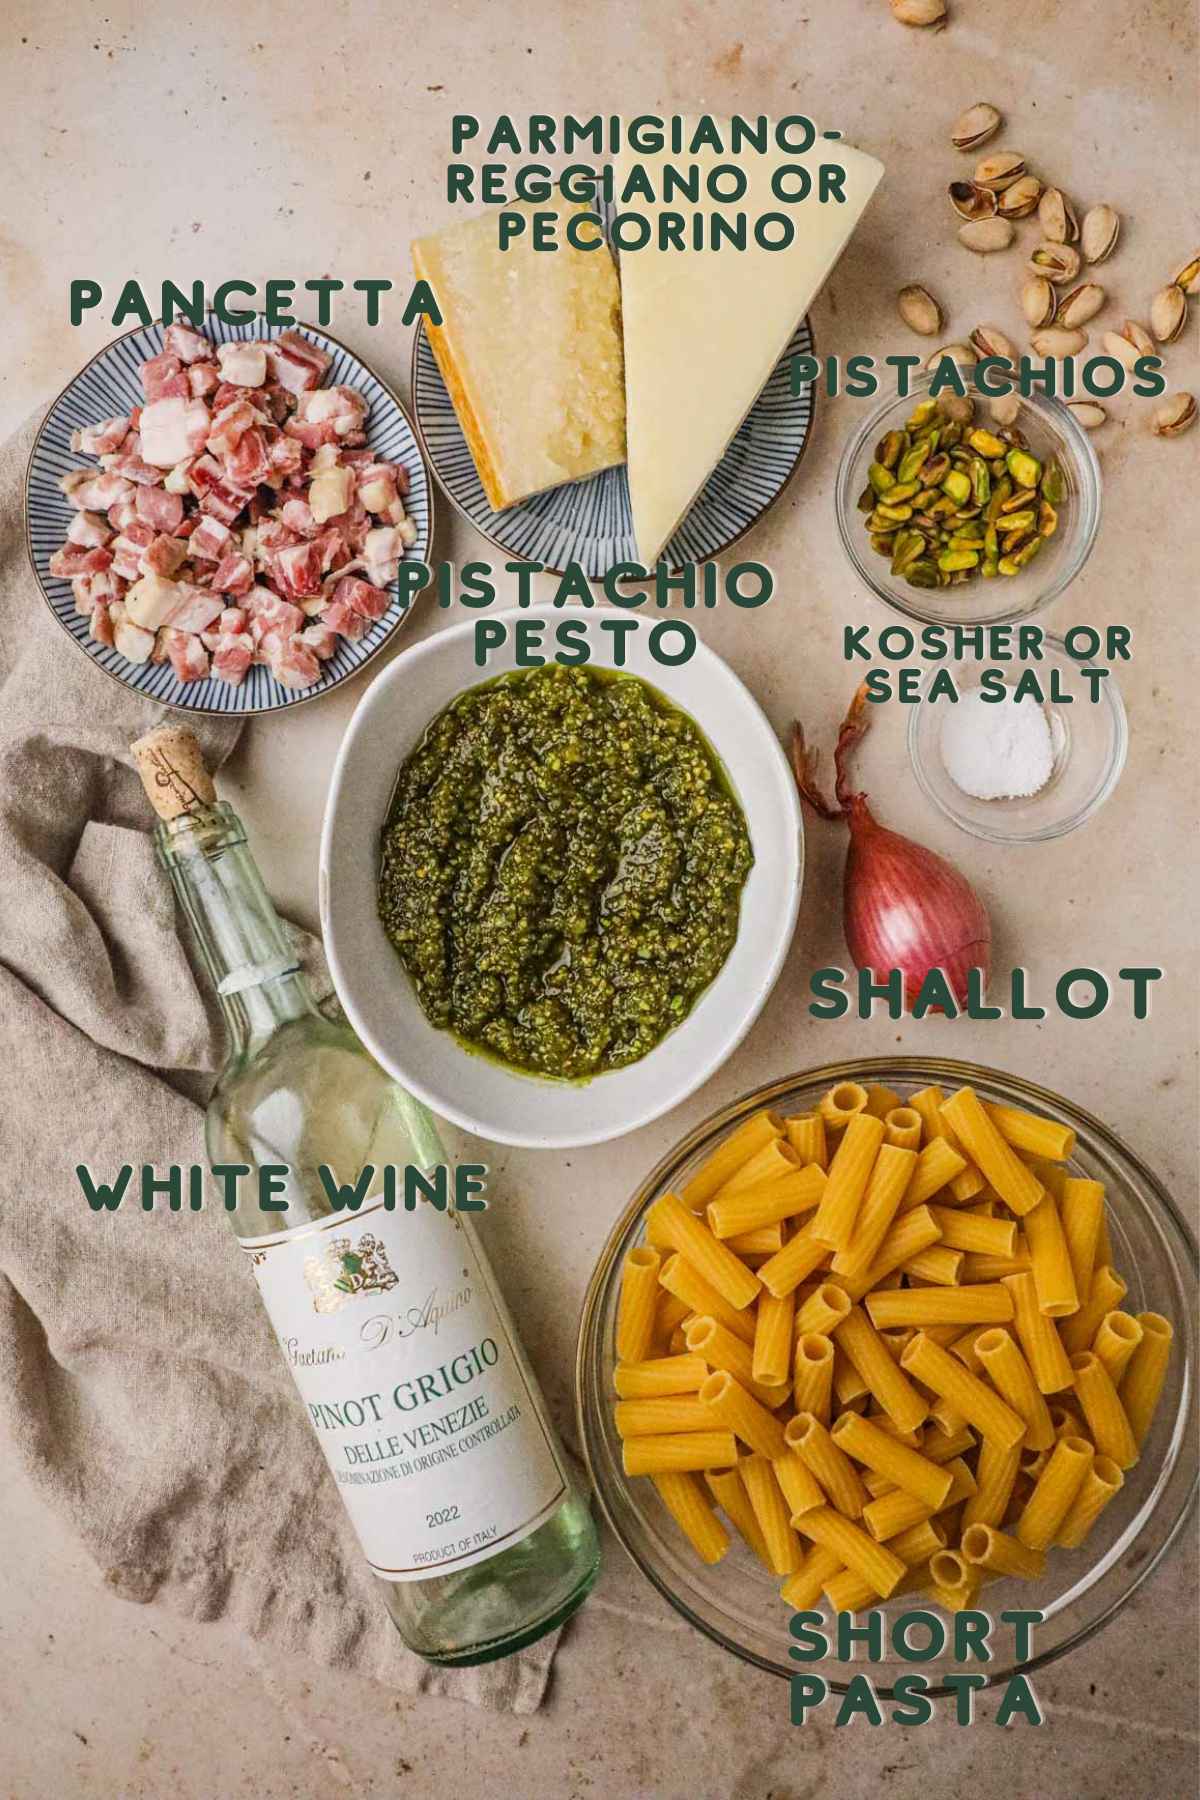 Ingredients to make pistachio pesto pasta, pancetta, pistachio pesto, parmigiano-reggiano, white wine, shallot, kosher salt, pistachios, rigatoni.